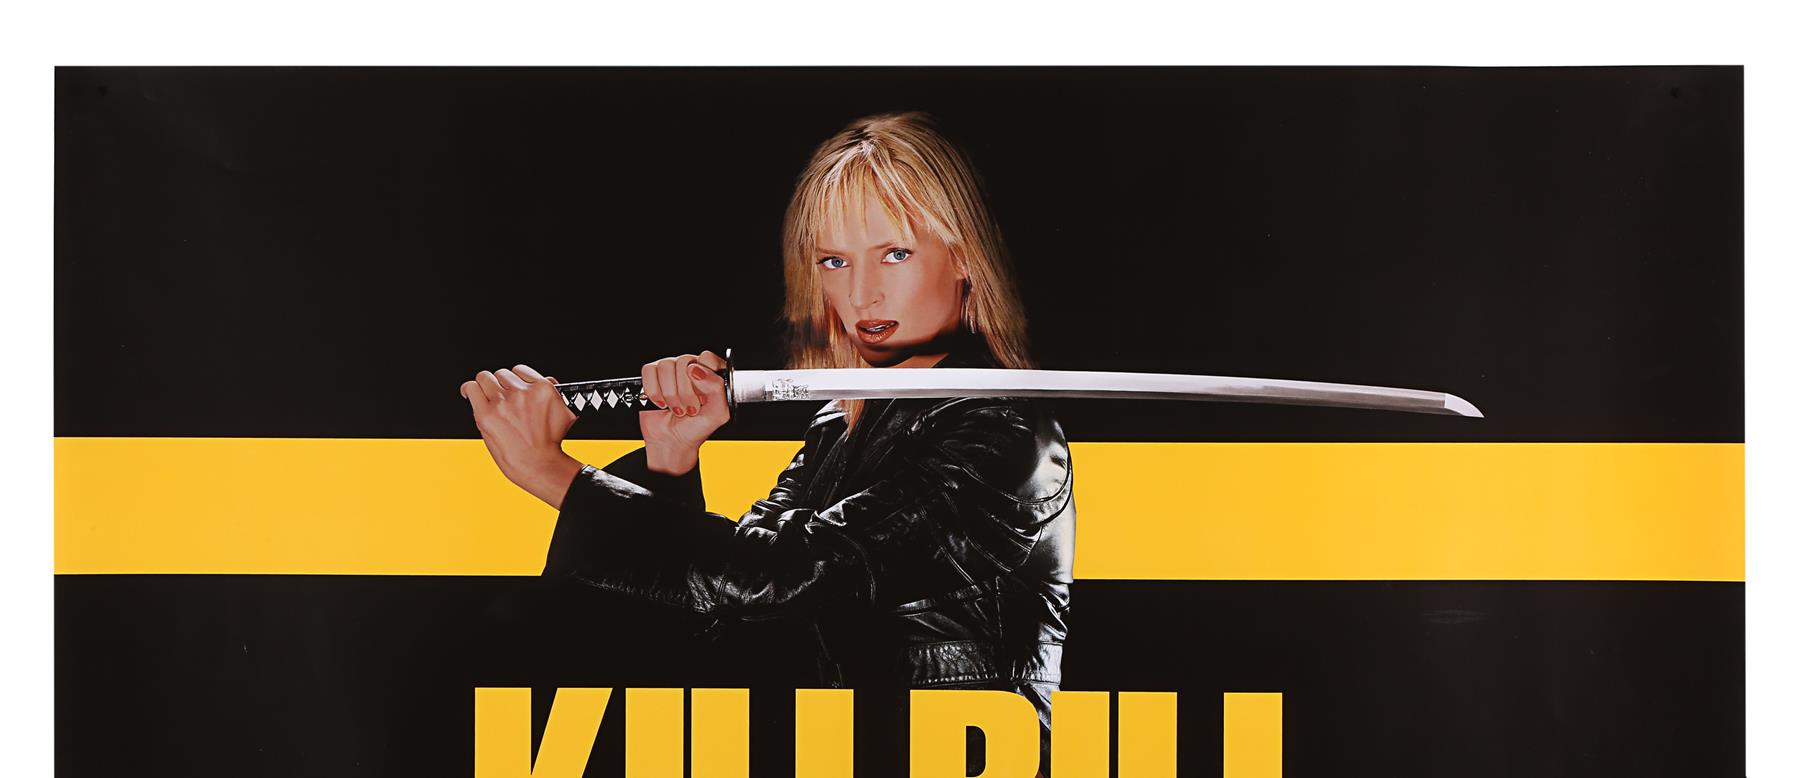 KILL BILL (2003), KILL BILL: VOLUME II (2004) - Two UK Quads, 2003 and 2004 - Image 3 of 9